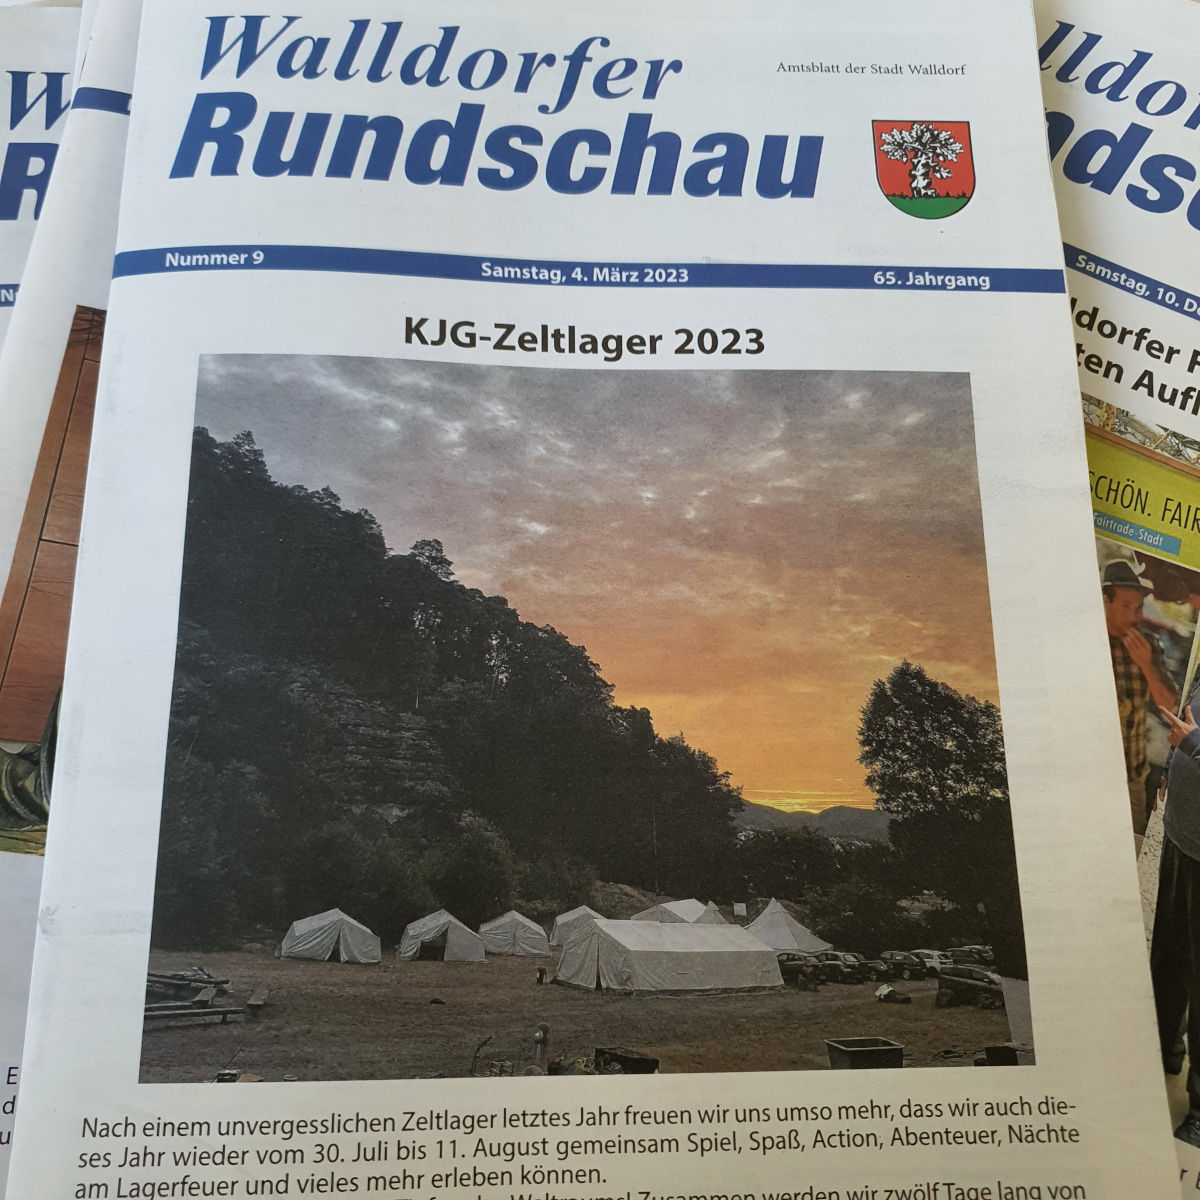 Die Walldorfer Rundschau 2023 Nr. 9 | Foto: Dr. Clemens Kriesel